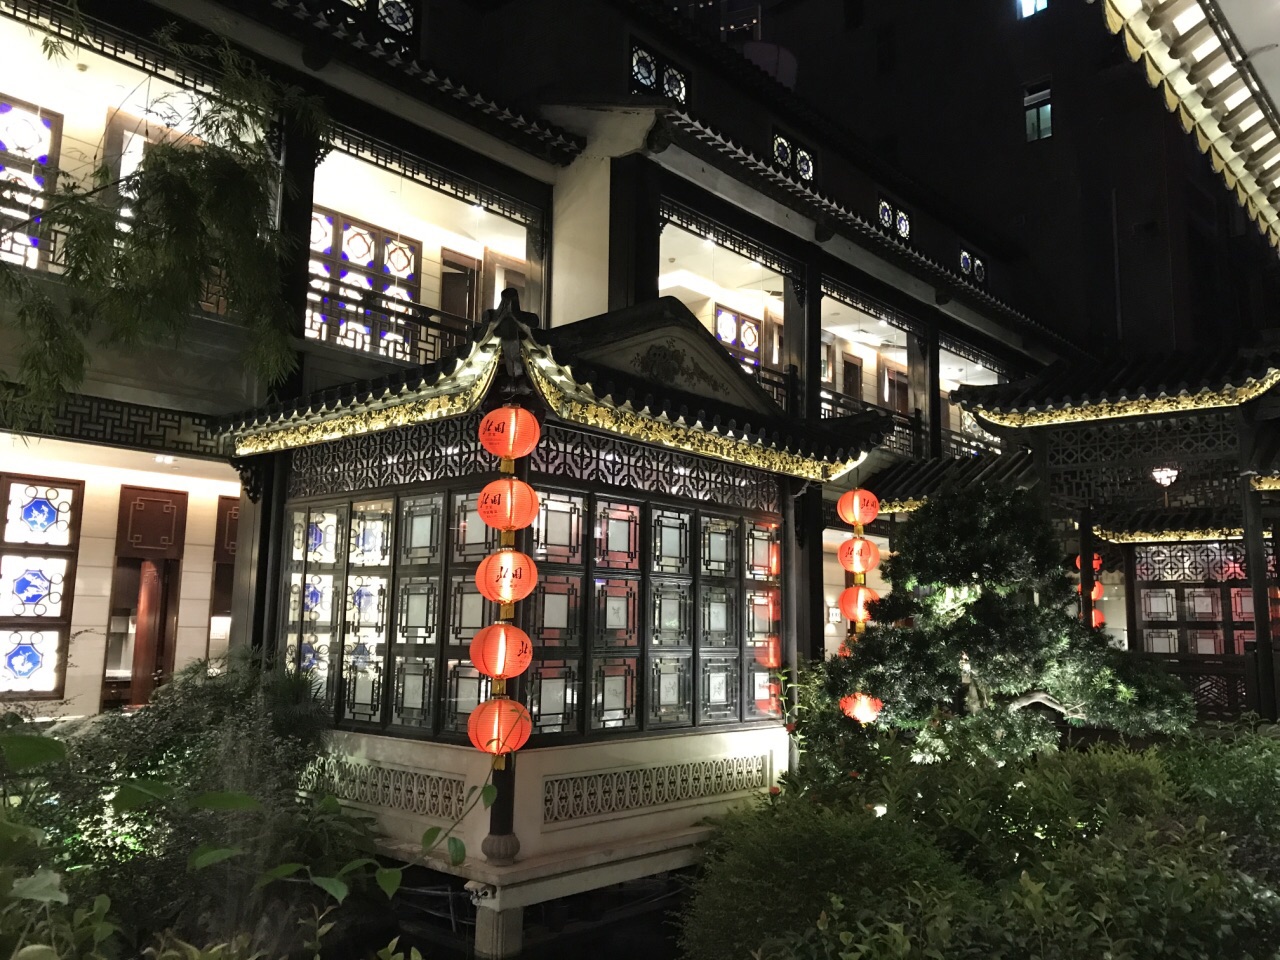 【携程美食林】广州北园酒家(小北路店)餐馆,在老广的推荐下来到北园